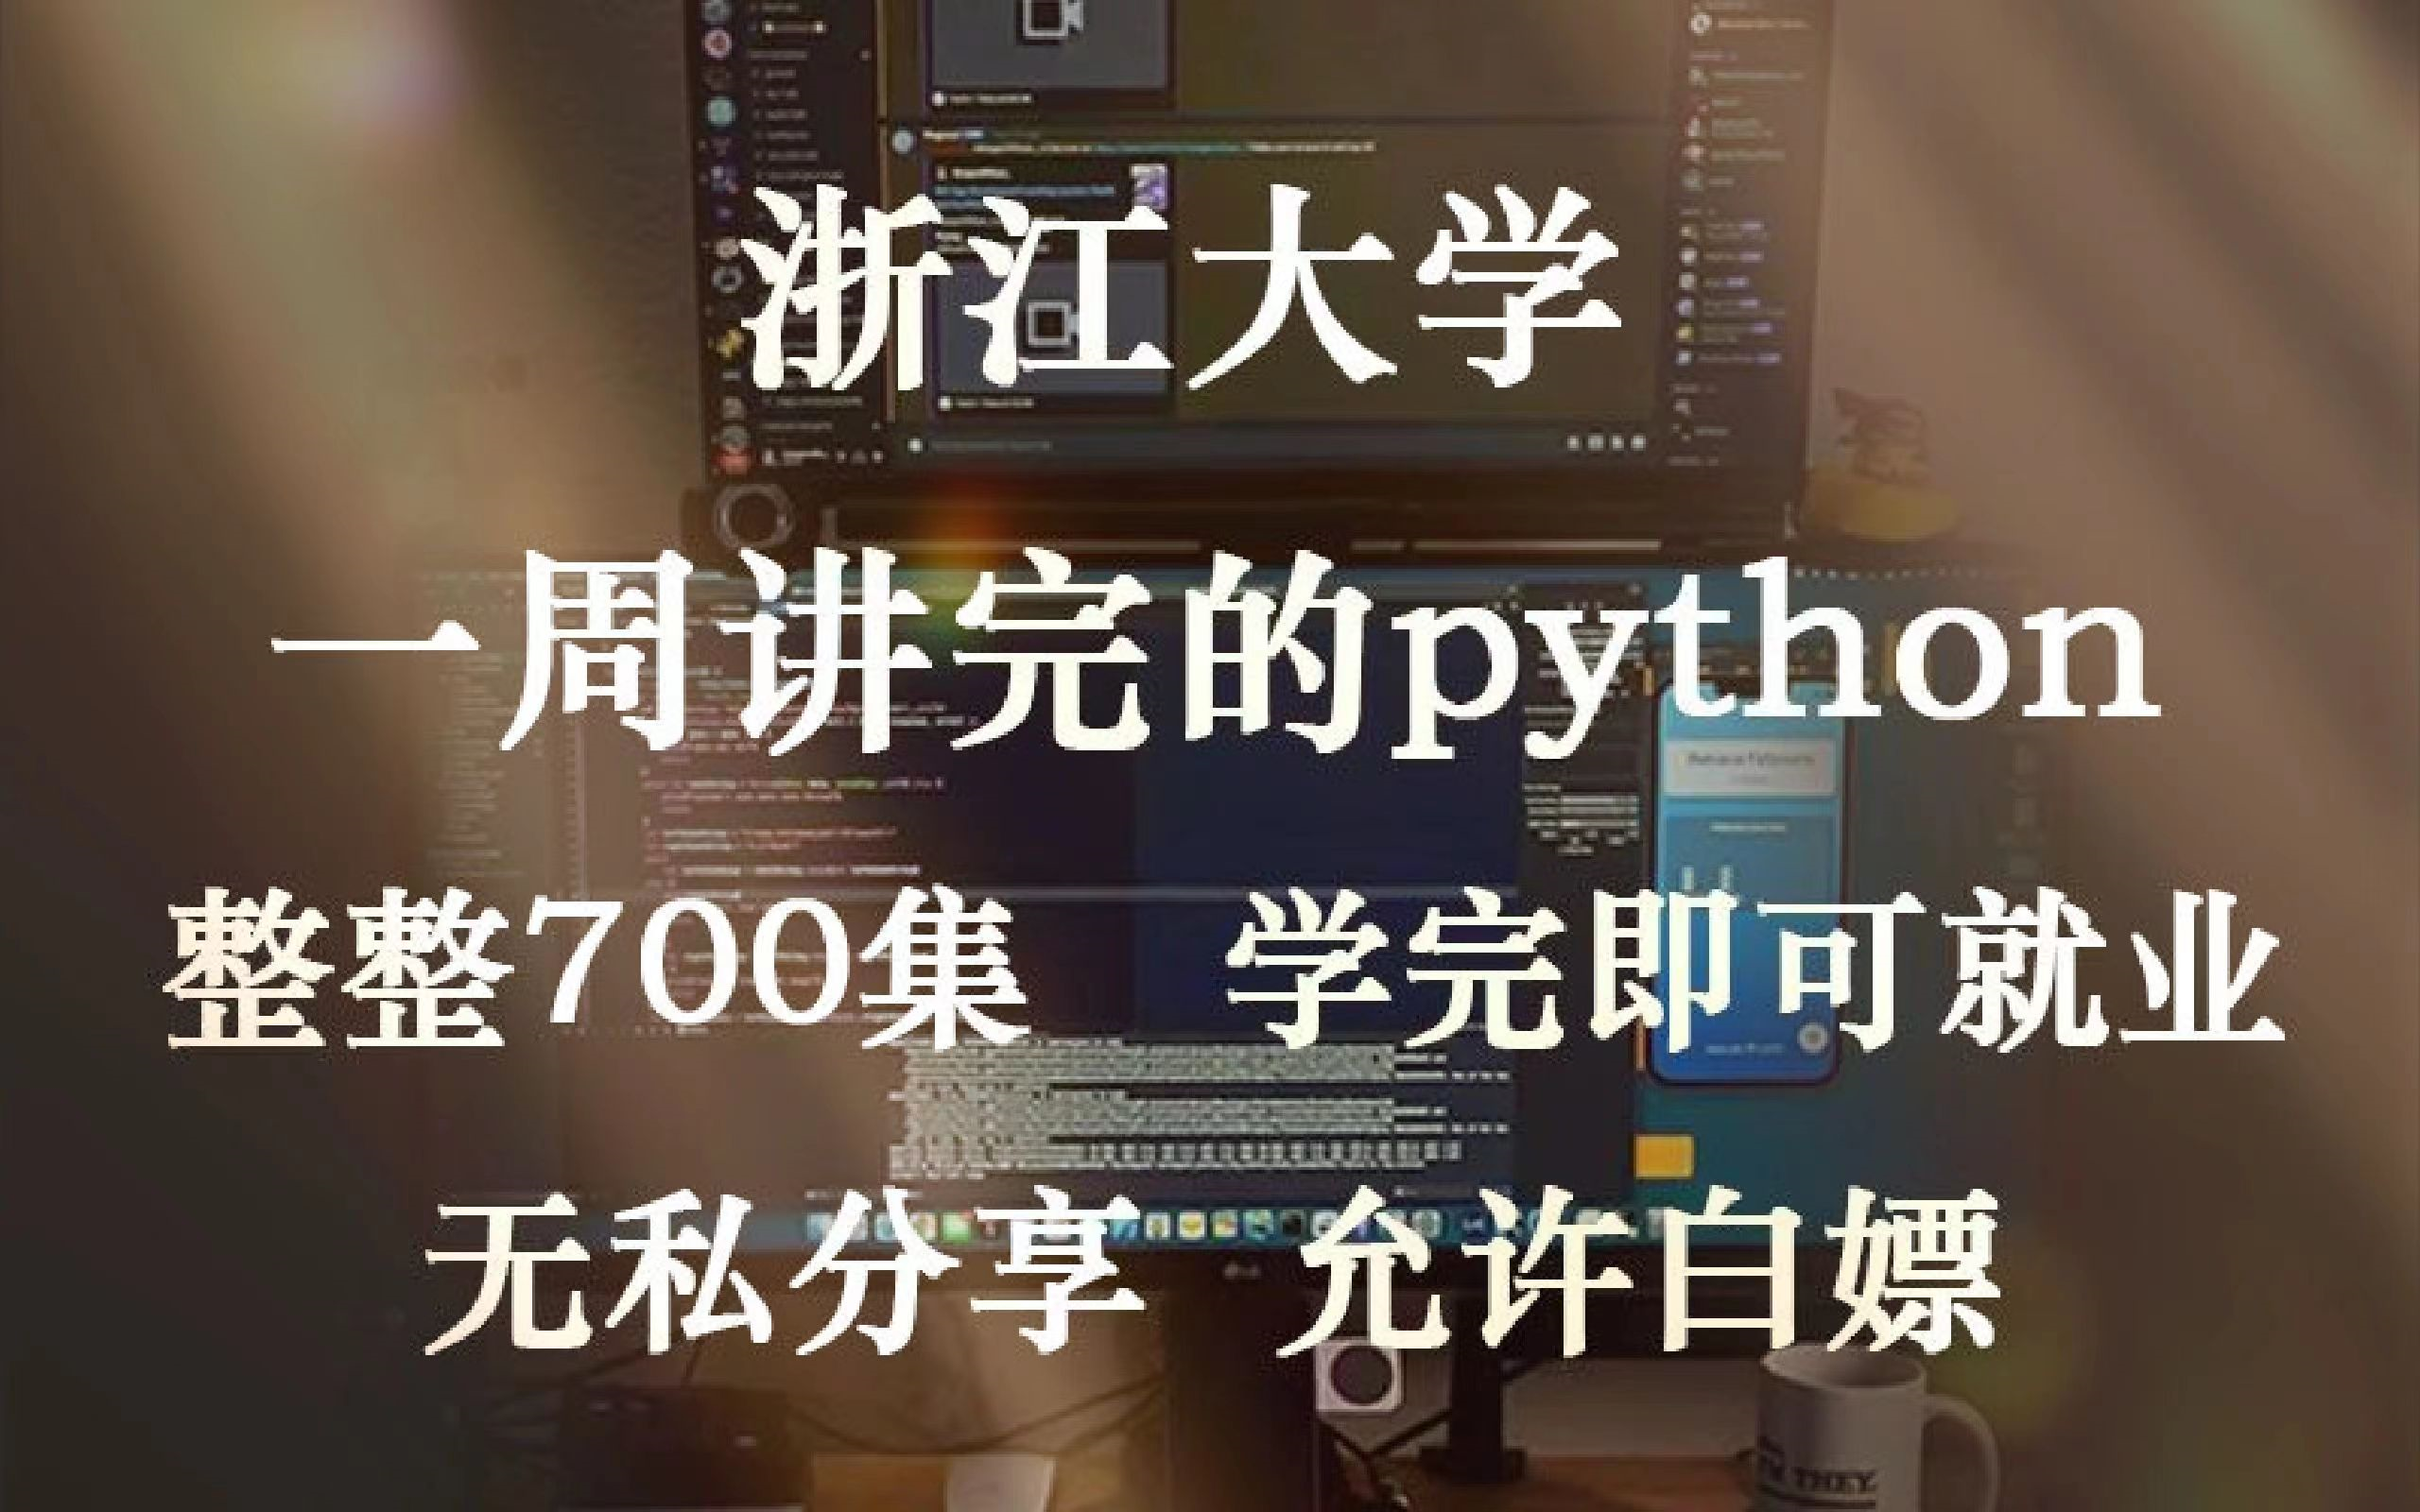 【B站最完整】浙江大学一周讲完的Python教程，整整700集，无私分享，拿走不谢，手把手教学，学完即可就业